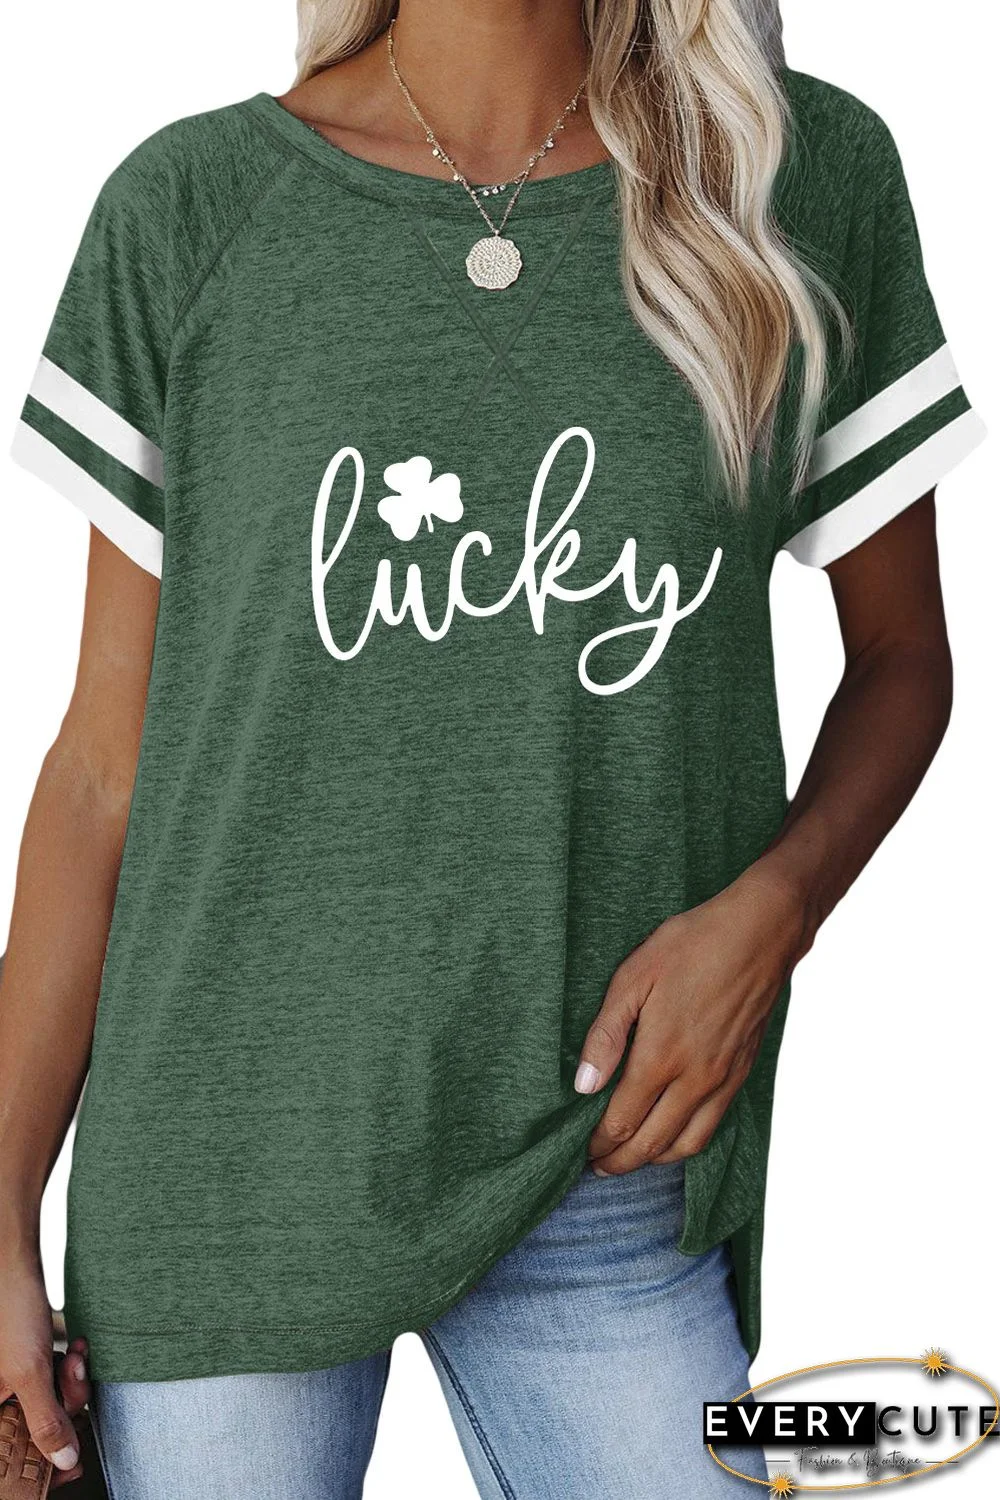 Green Lucky Clover Print Striped Short Sleeve T-shirt